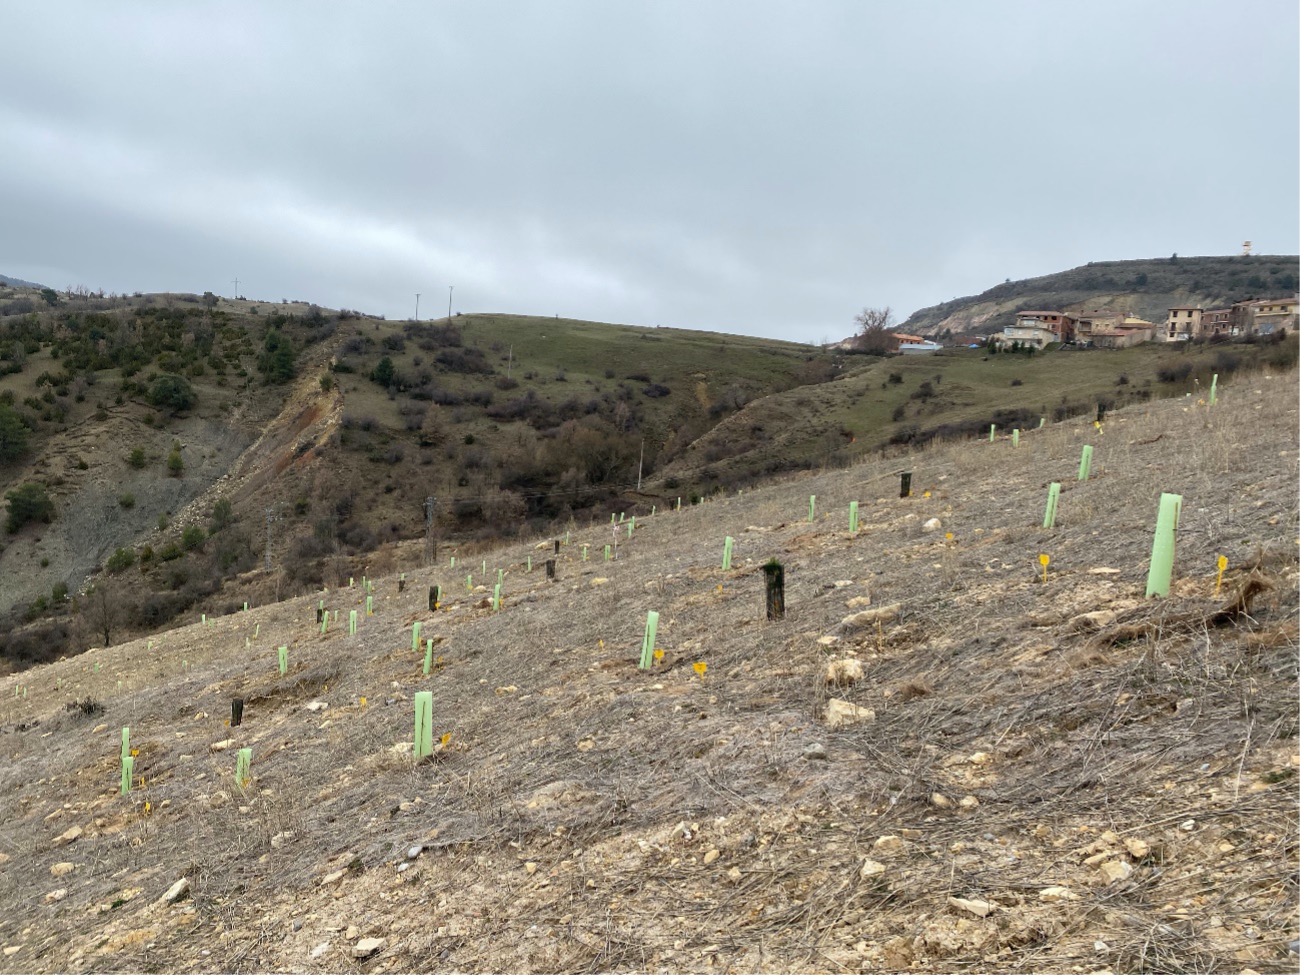 Finalizada la plantación de especies leñosas en las escombreras exteriores de la mina Santa Engracia – 27 enero 2022